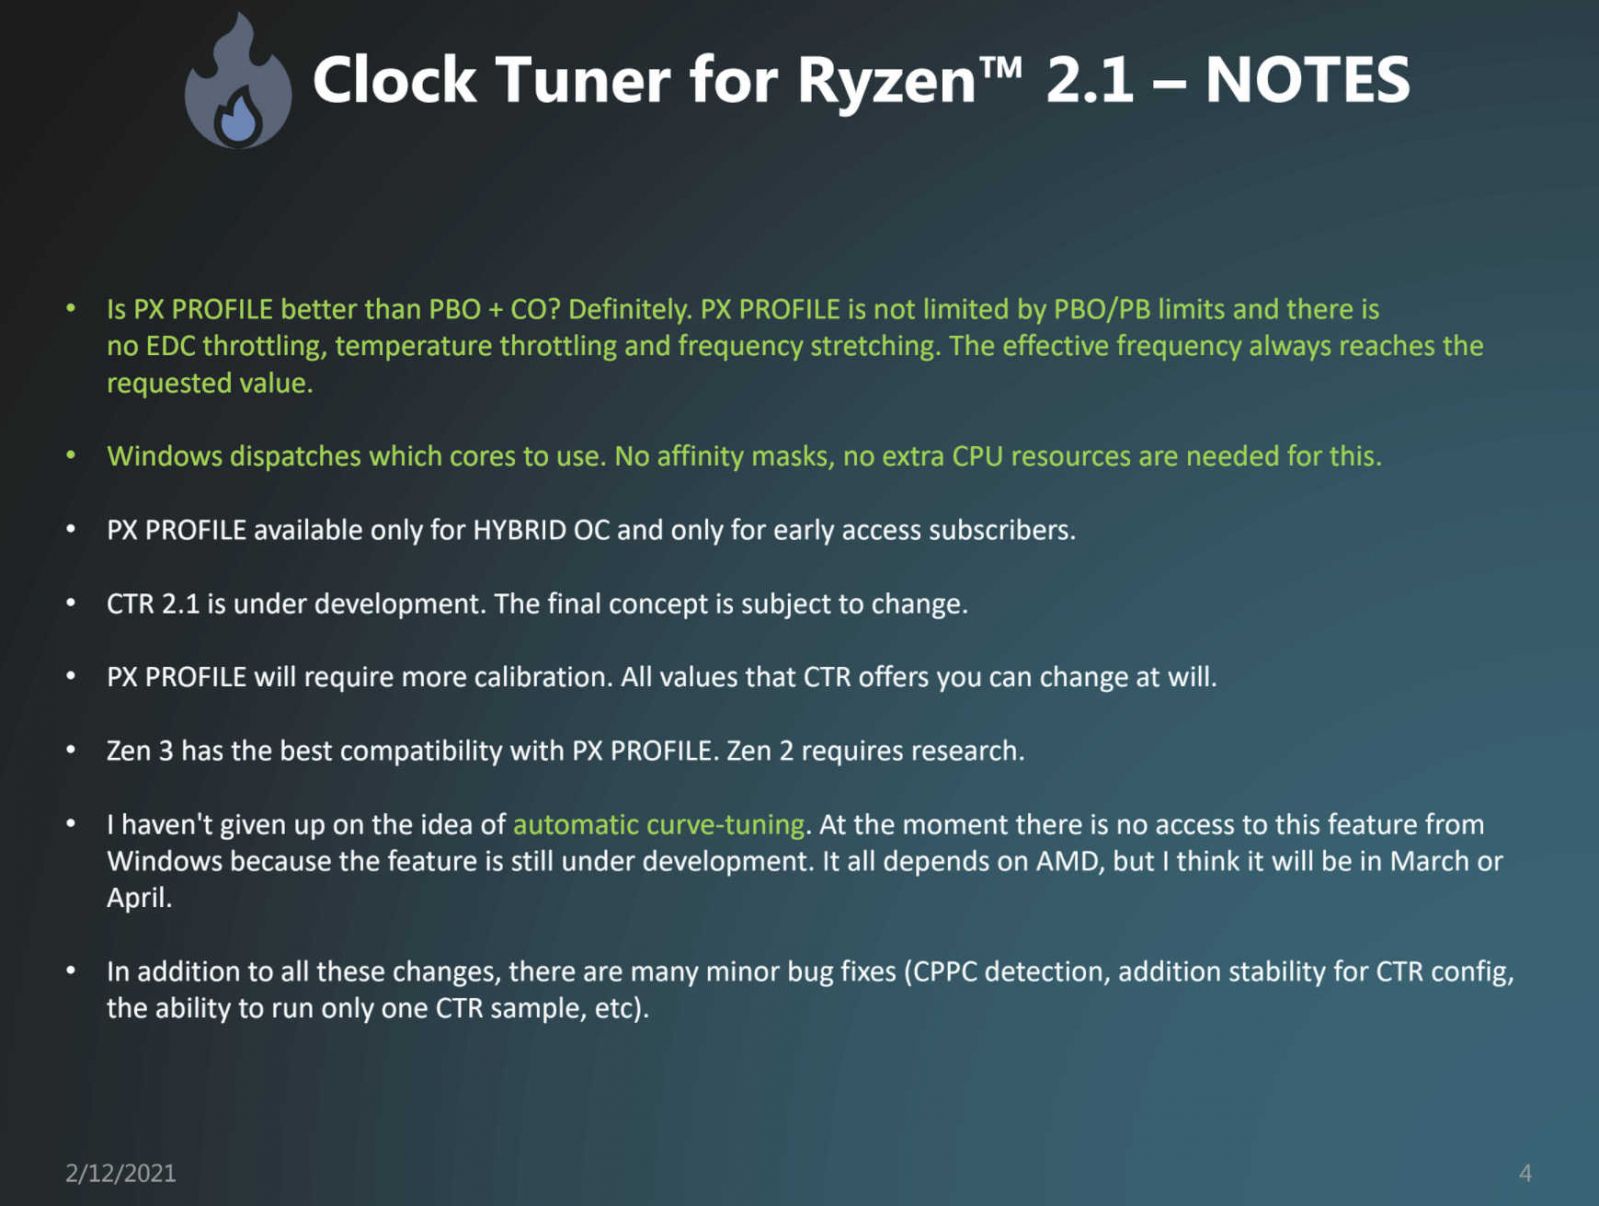 Clock-Tuner-For-Ryzen-2.1-Hybrid-OC-4.jpg